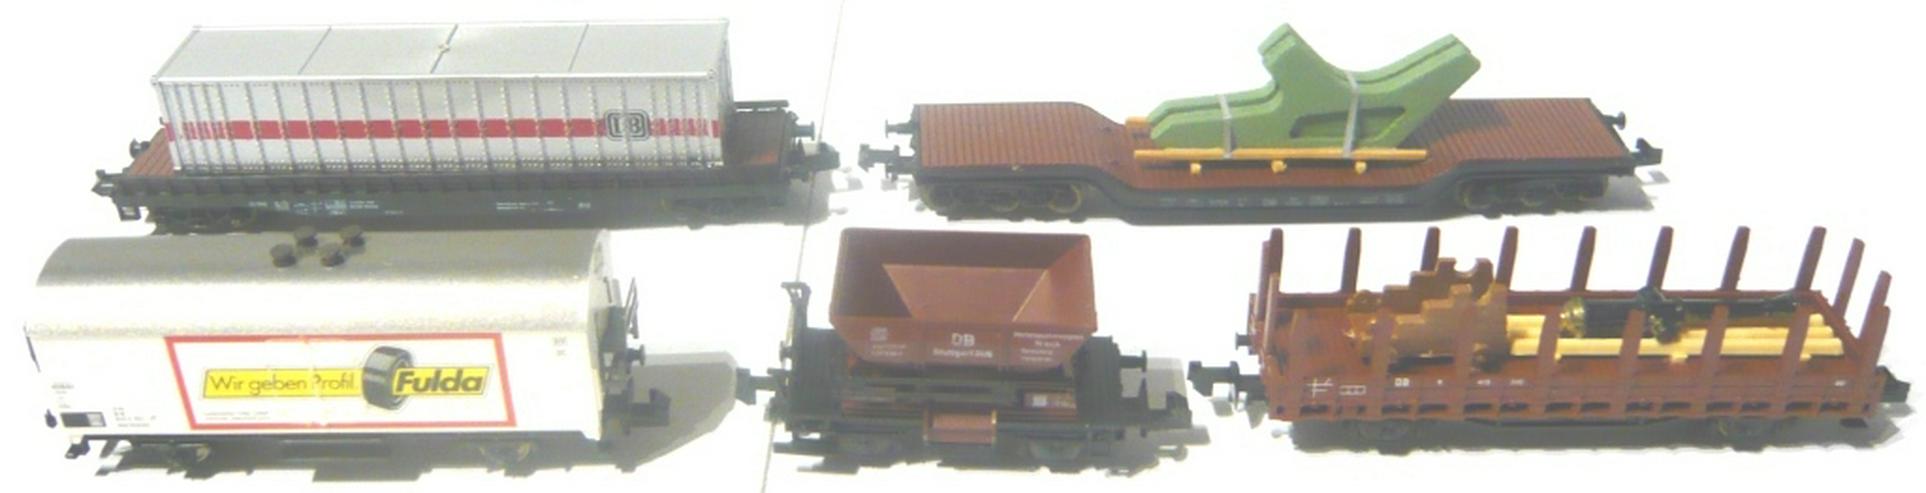 Bild 3: Roco Trix N Güterzug Set 5 Wagen in Verpackung GUT